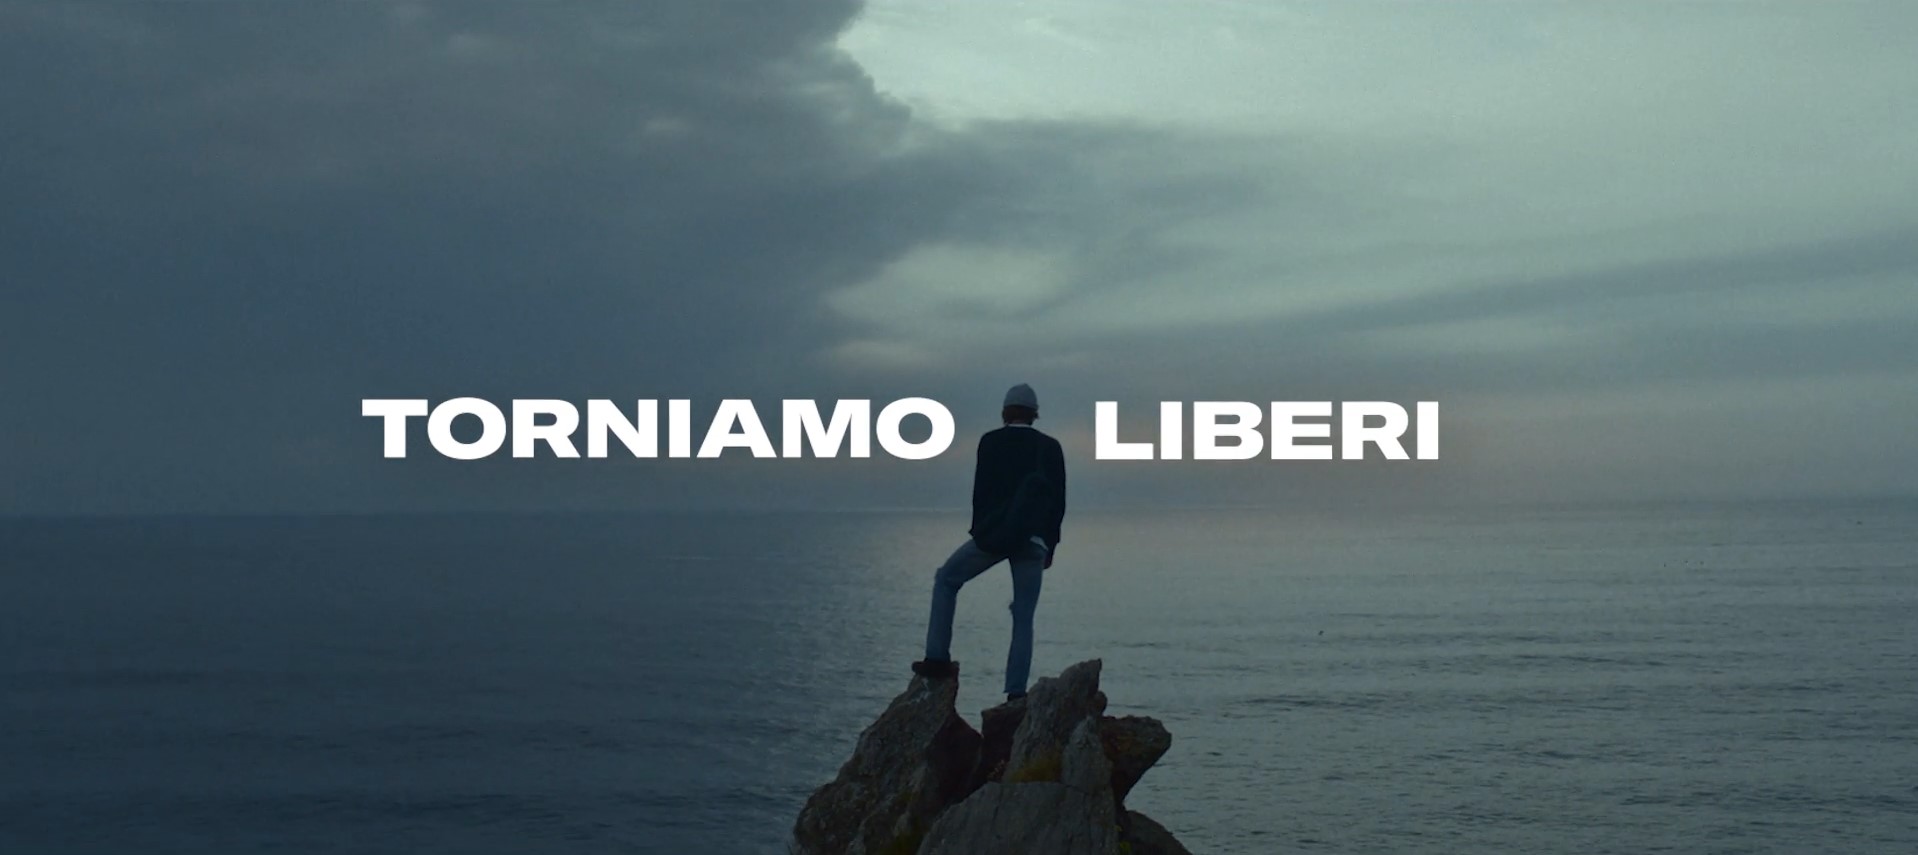 filmmaster-parmacotto-we-are-back-torniamo-liberi